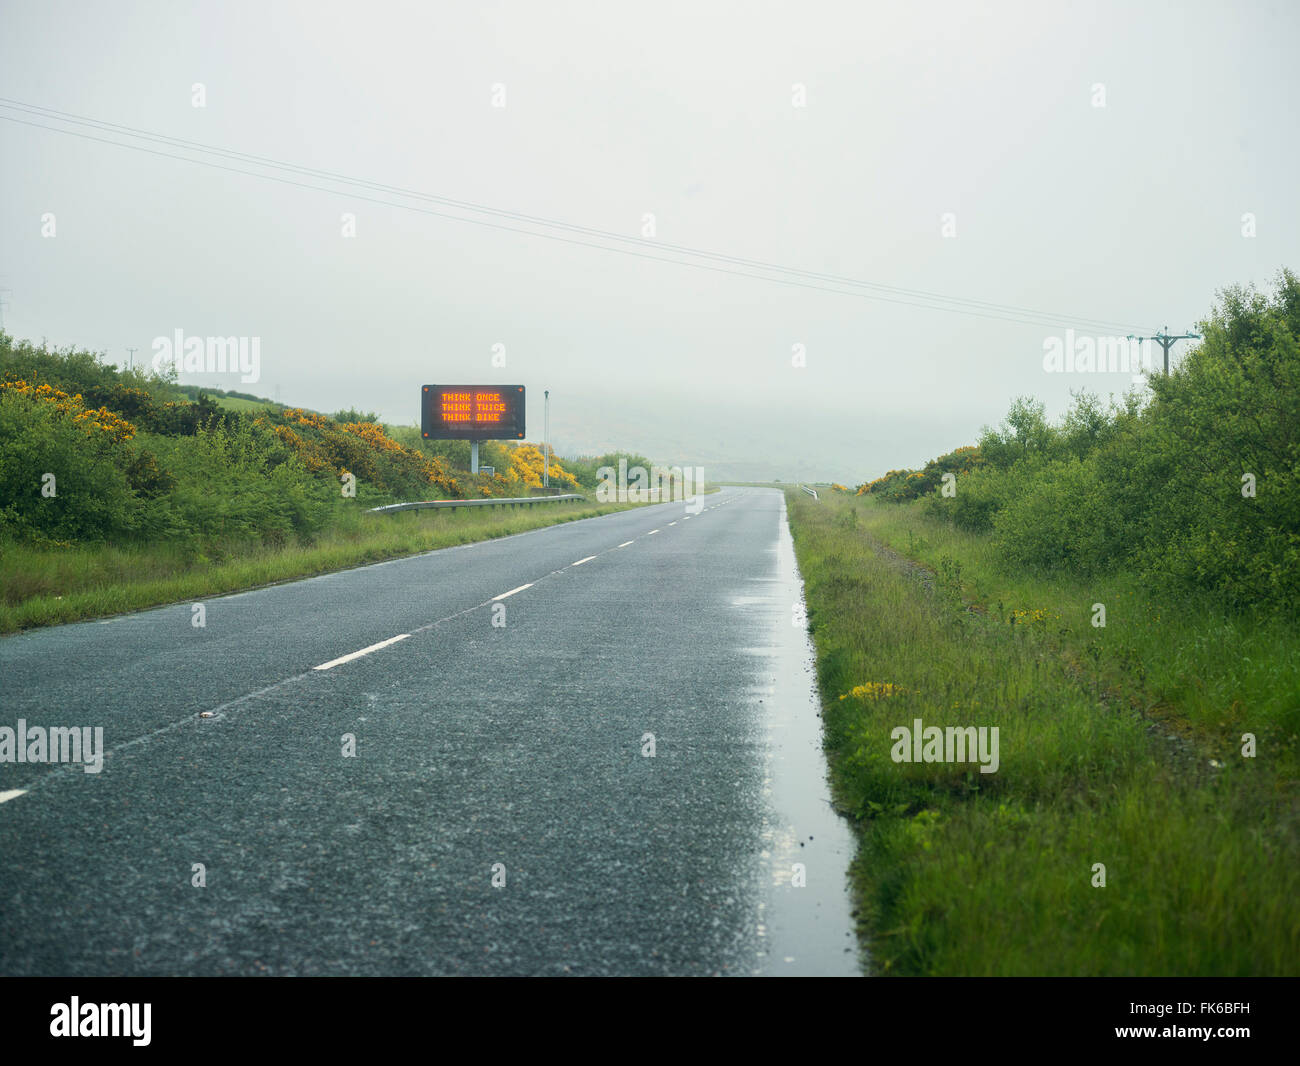 Road warning sign, Scotland, United Kingdom, Europe Stock Photo